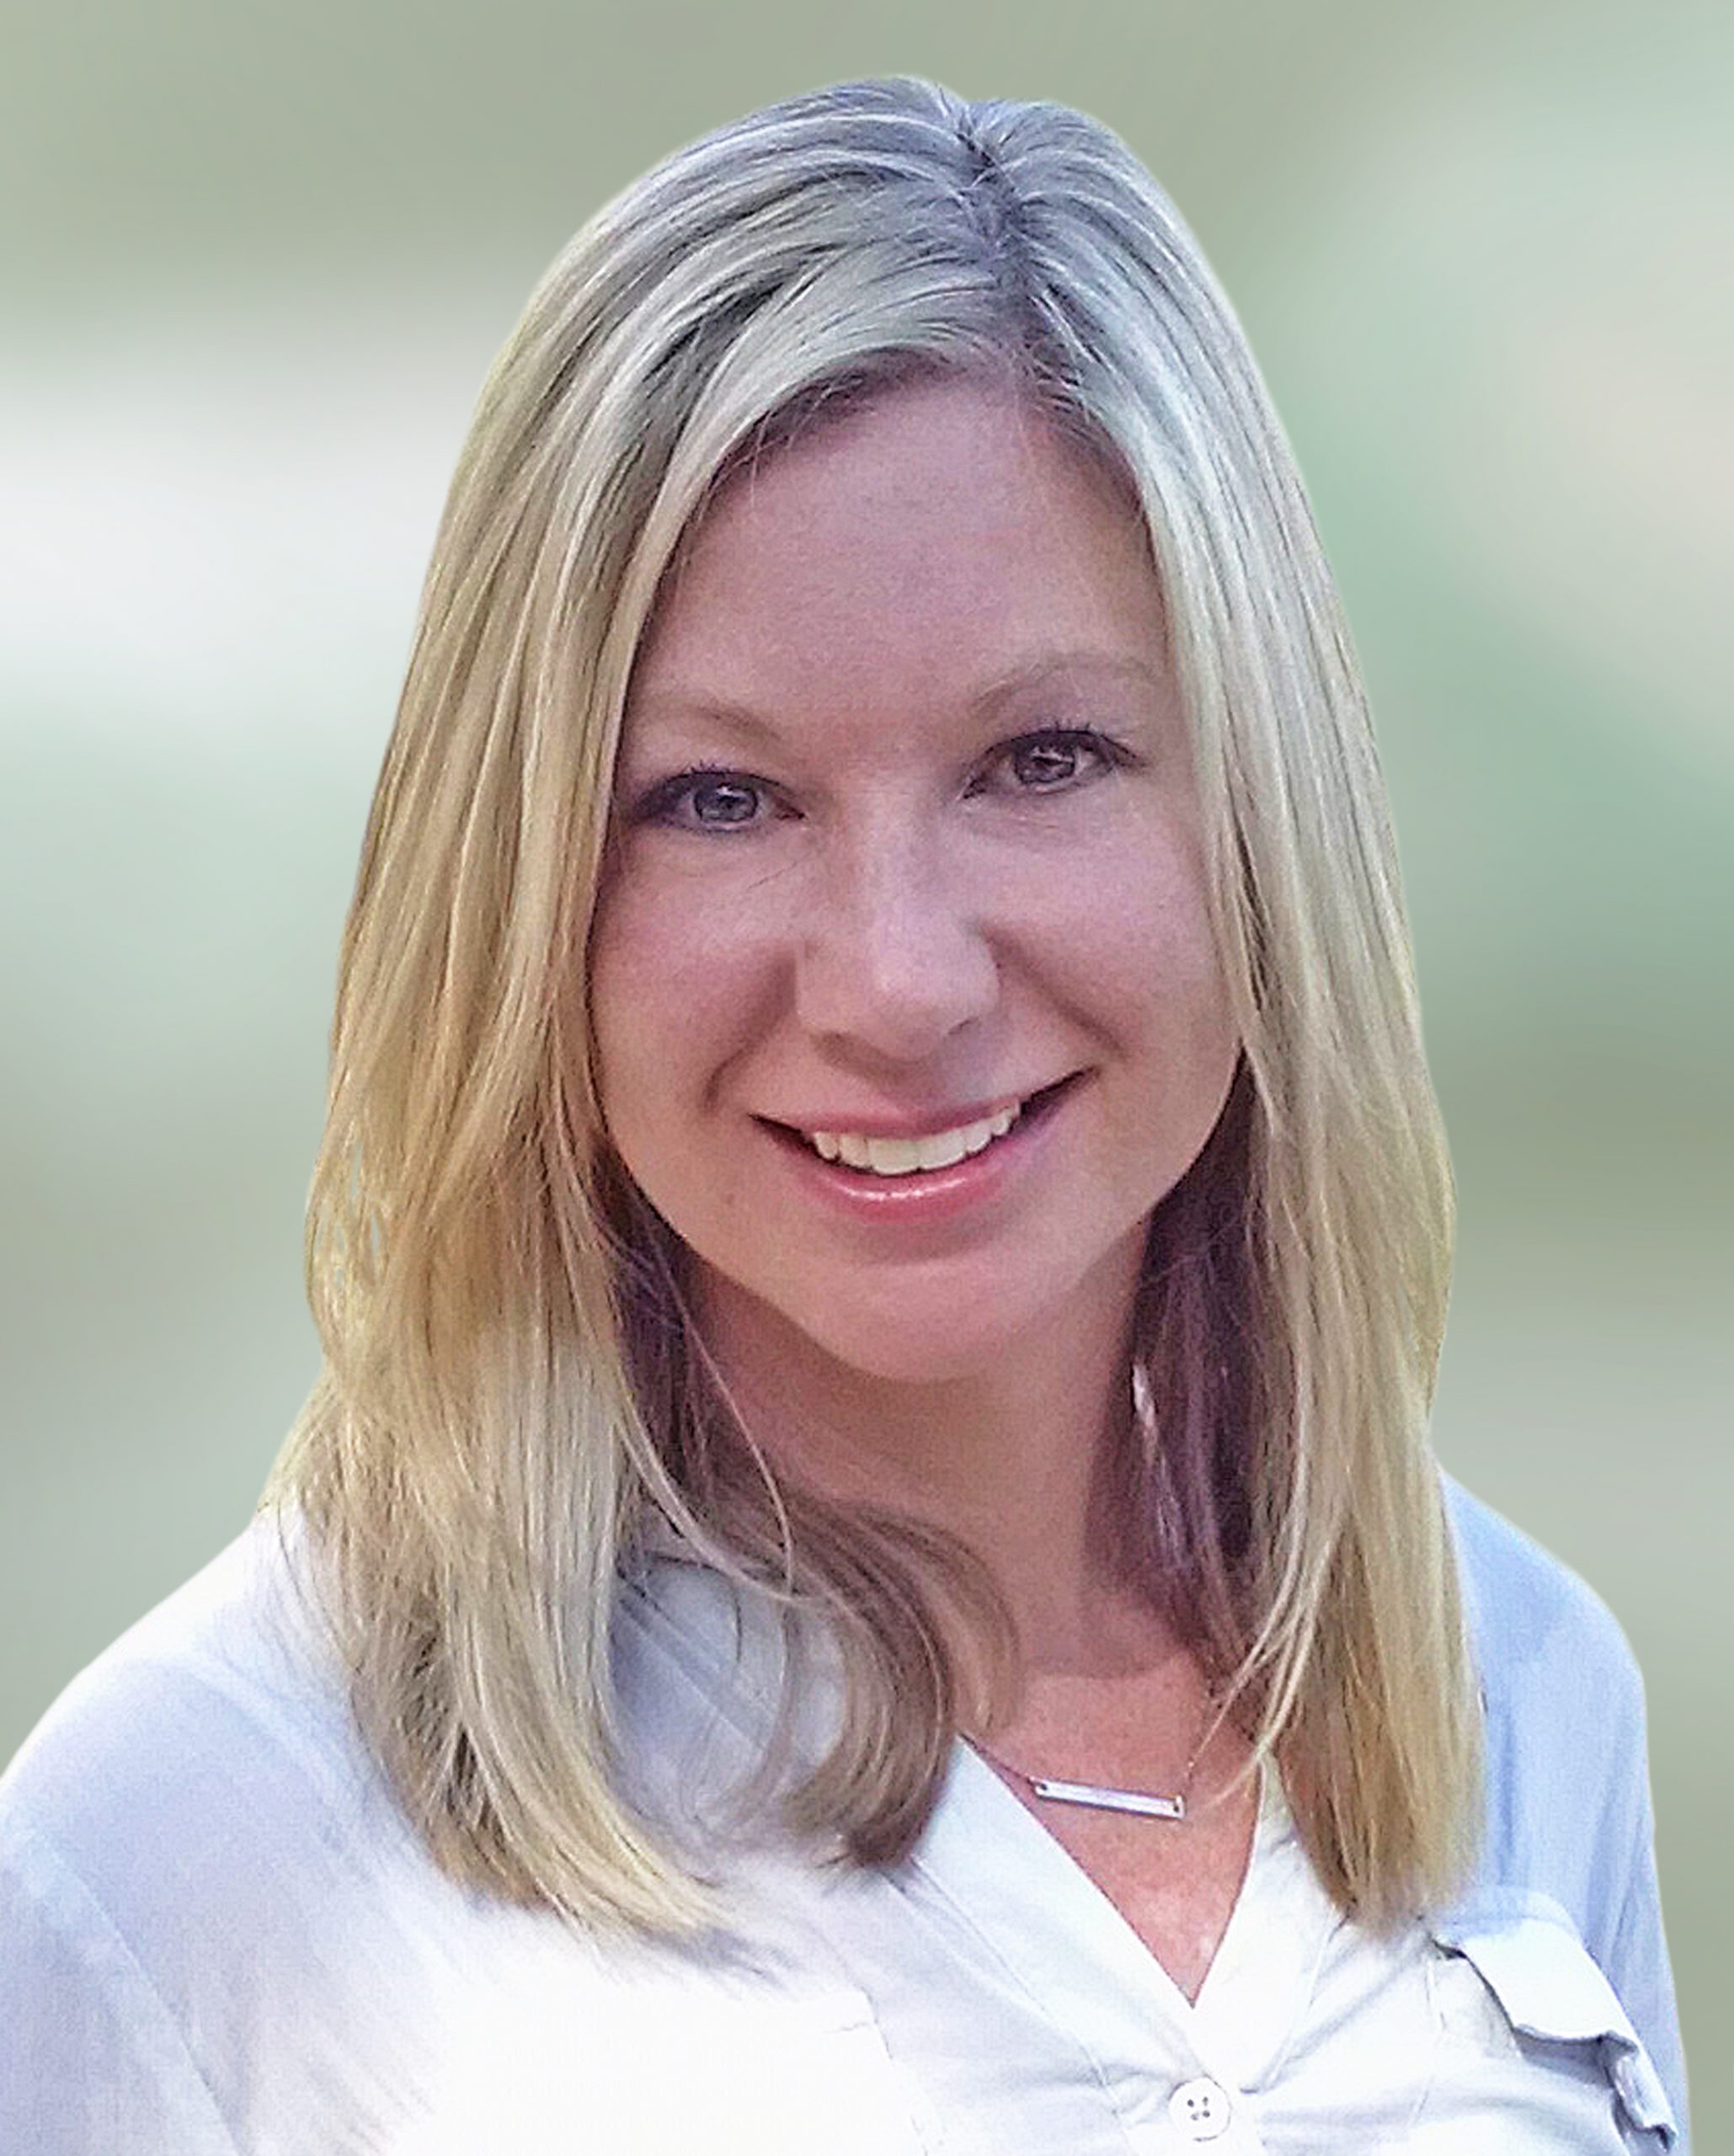 Kelly Campbell, Senior Director of Marketing, Uplift, Inc.